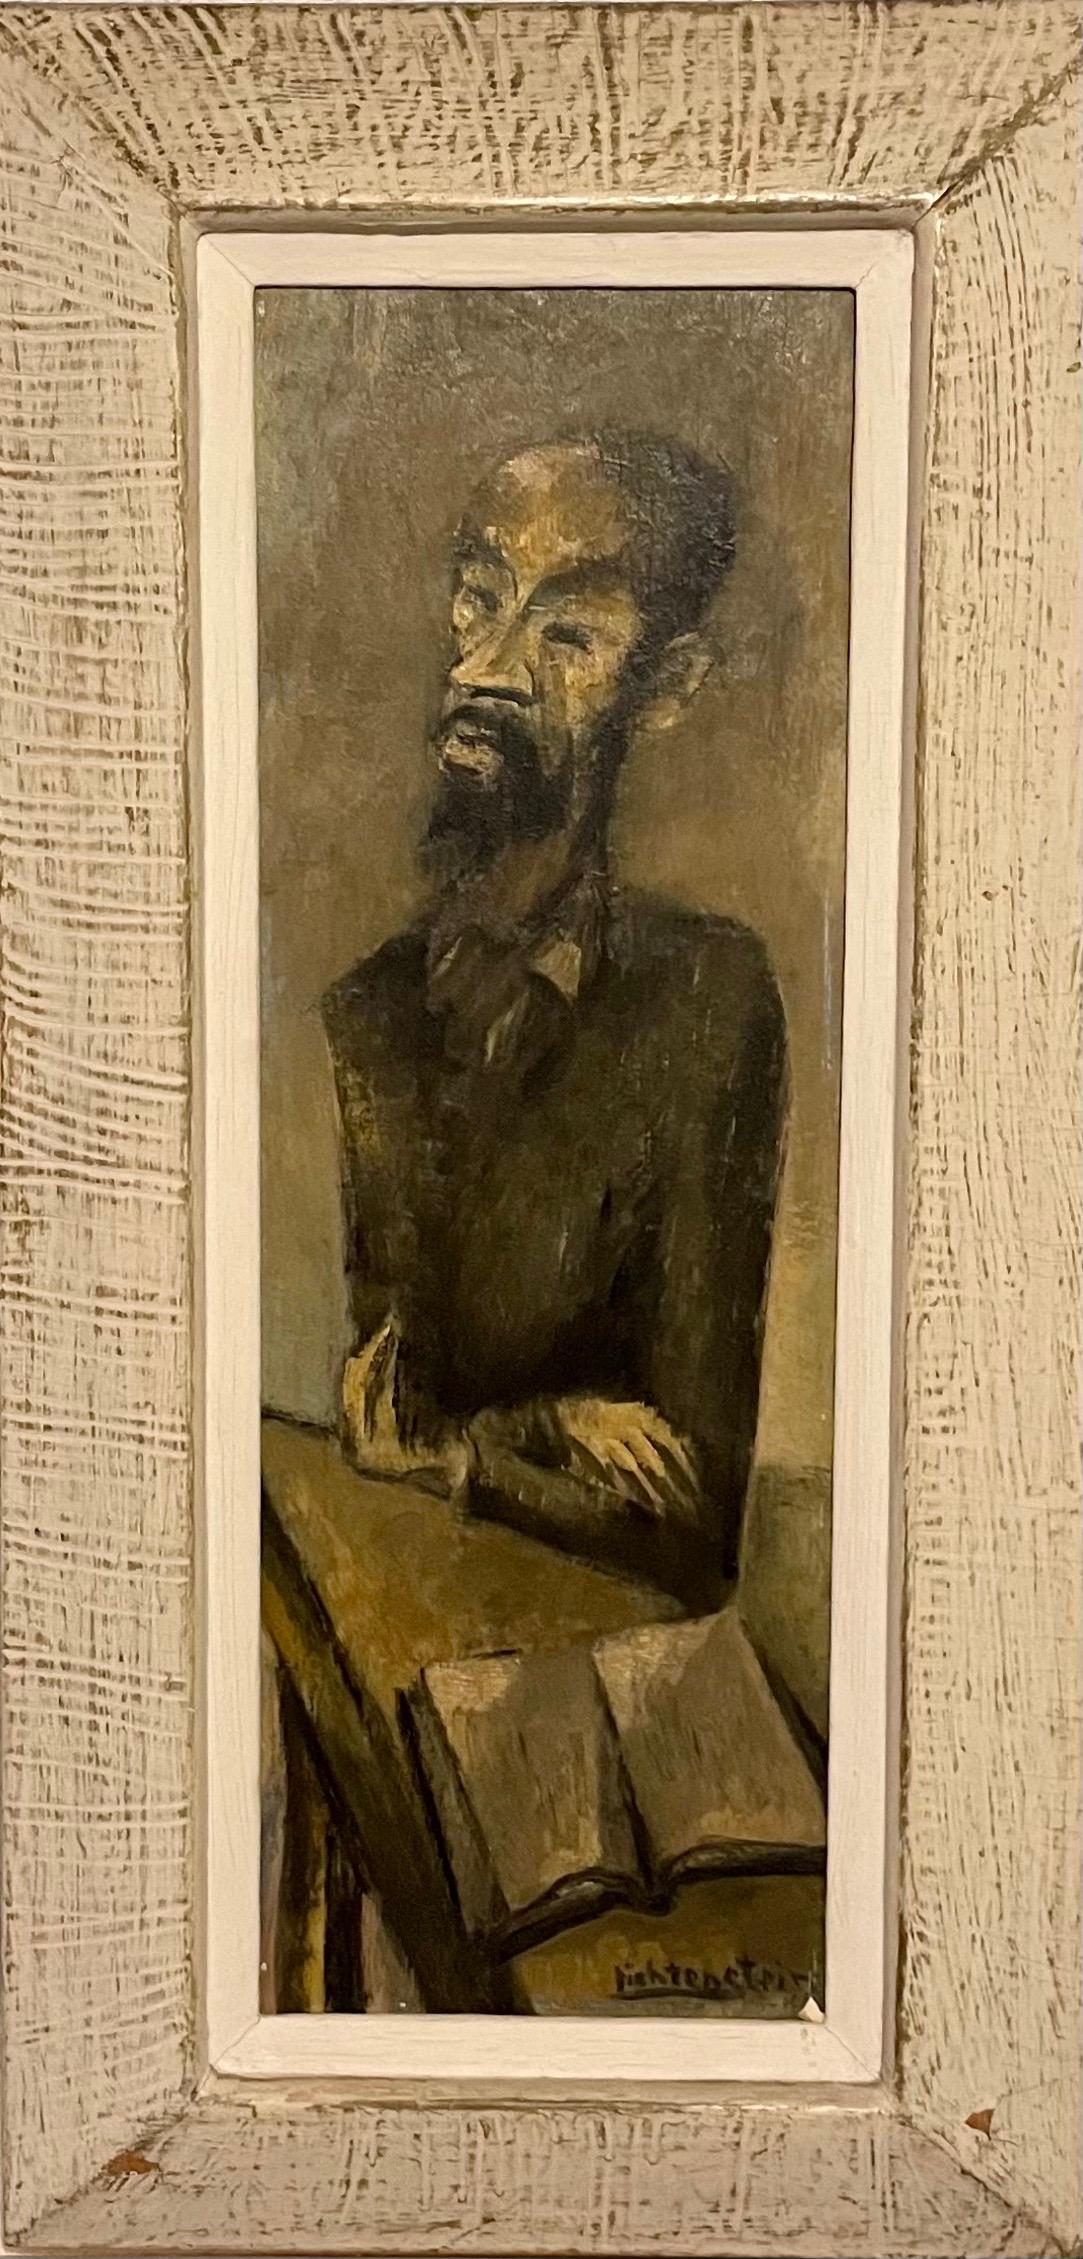 Portrait Painting Isaac Lichtenstein - Peinture à l'huile moderniste de lapin, scène de Synagogue juive judaïque, Paris. Lichtenstein.